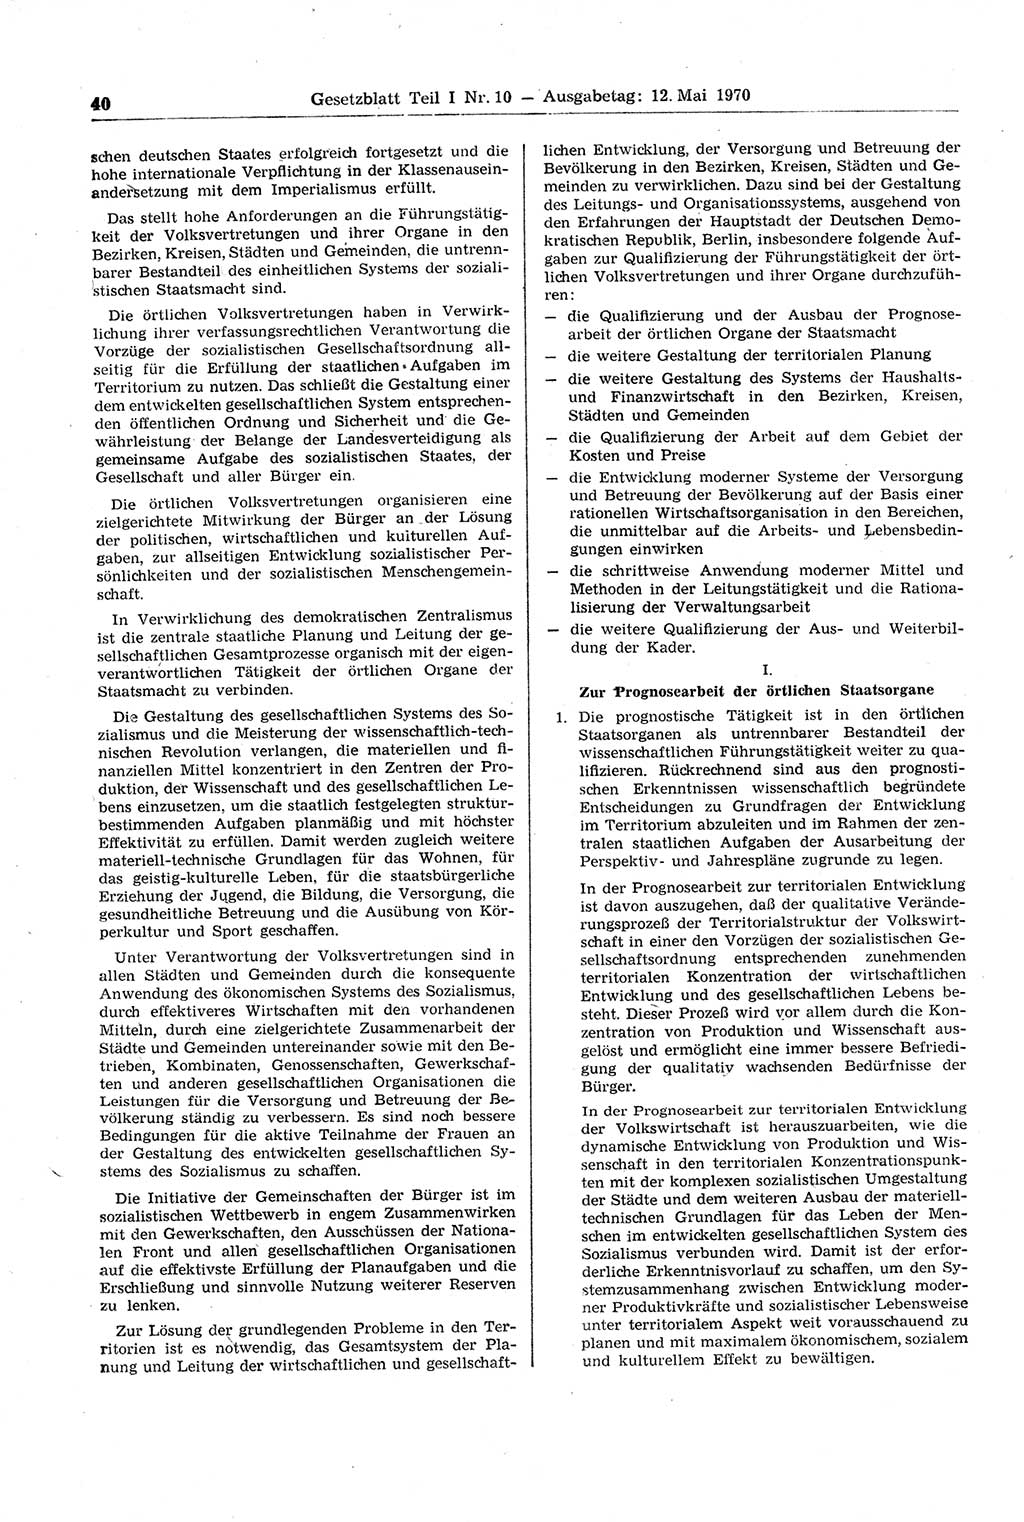 Gesetzblatt (GBl.) der Deutschen Demokratischen Republik (DDR) Teil Ⅰ 1970, Seite 40 (GBl. DDR Ⅰ 1970, S. 40)